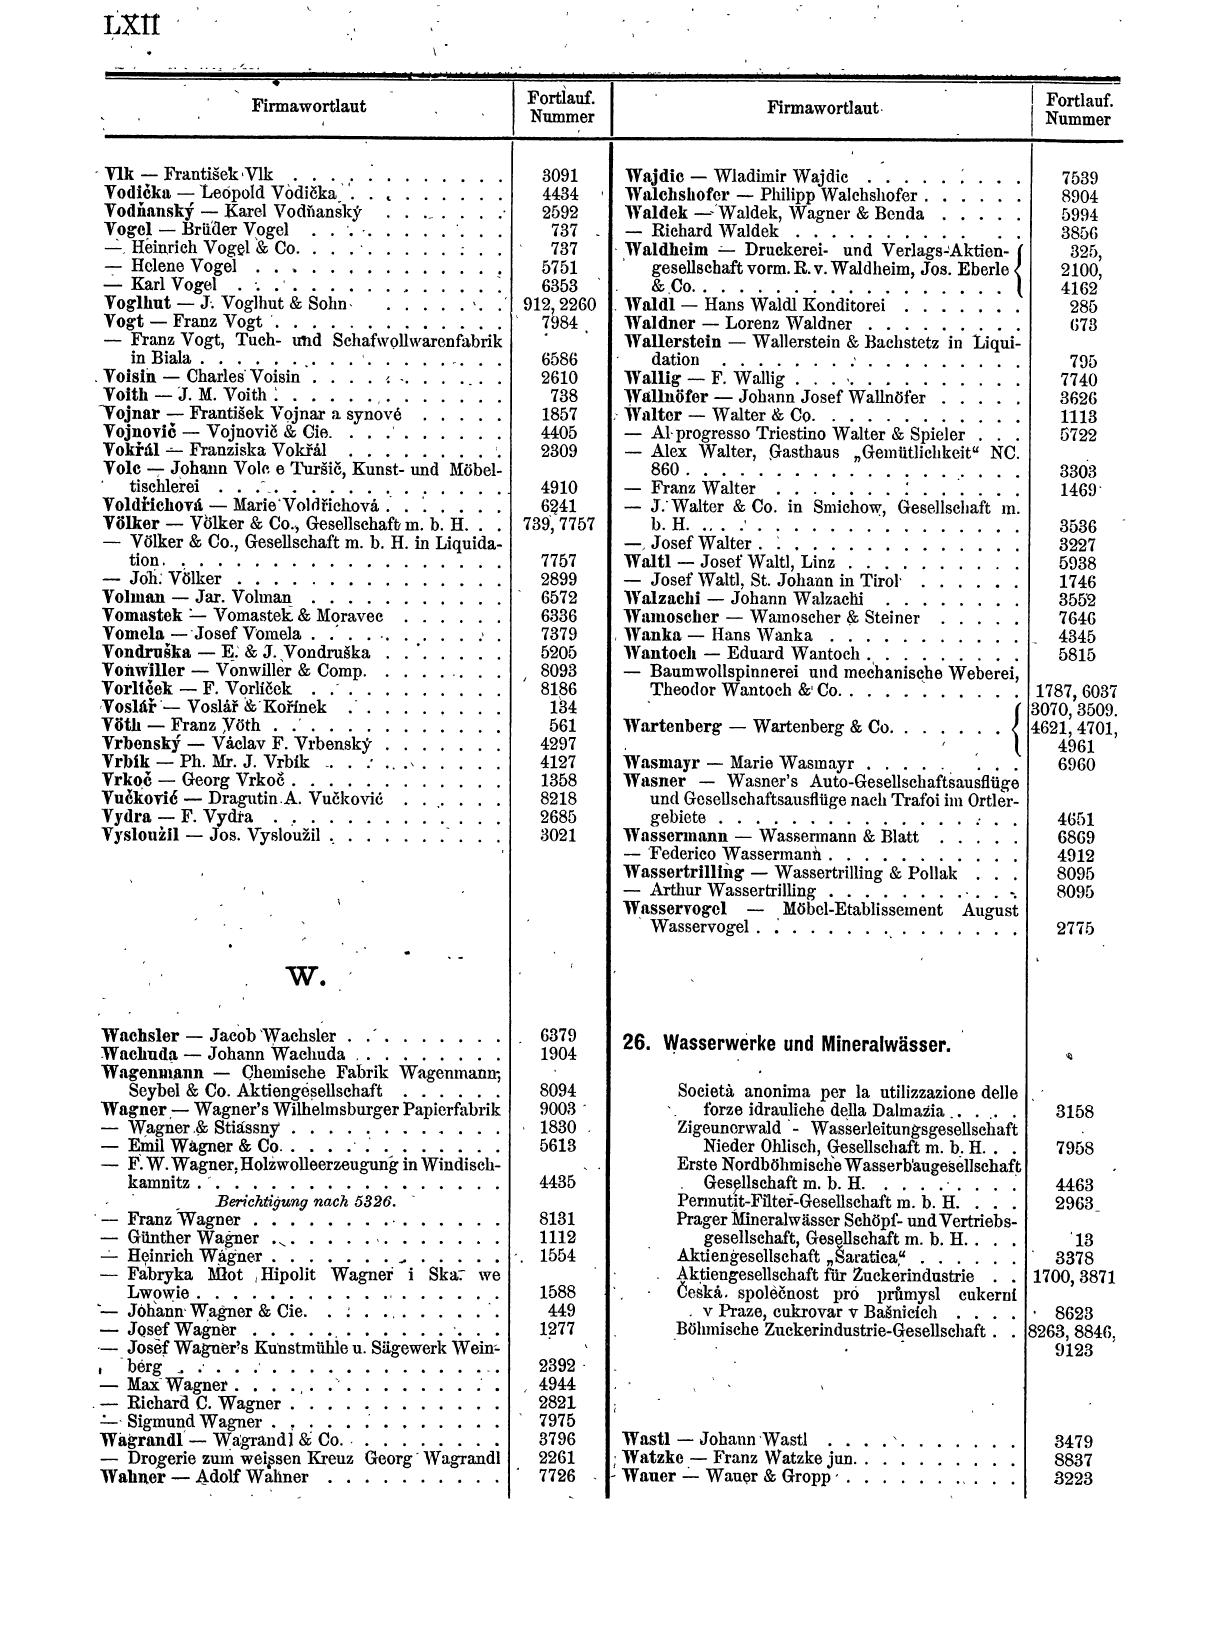 Zentralblatt für die Eintragungen in das Handelsregister 1913, Teil 1 - Seite 70